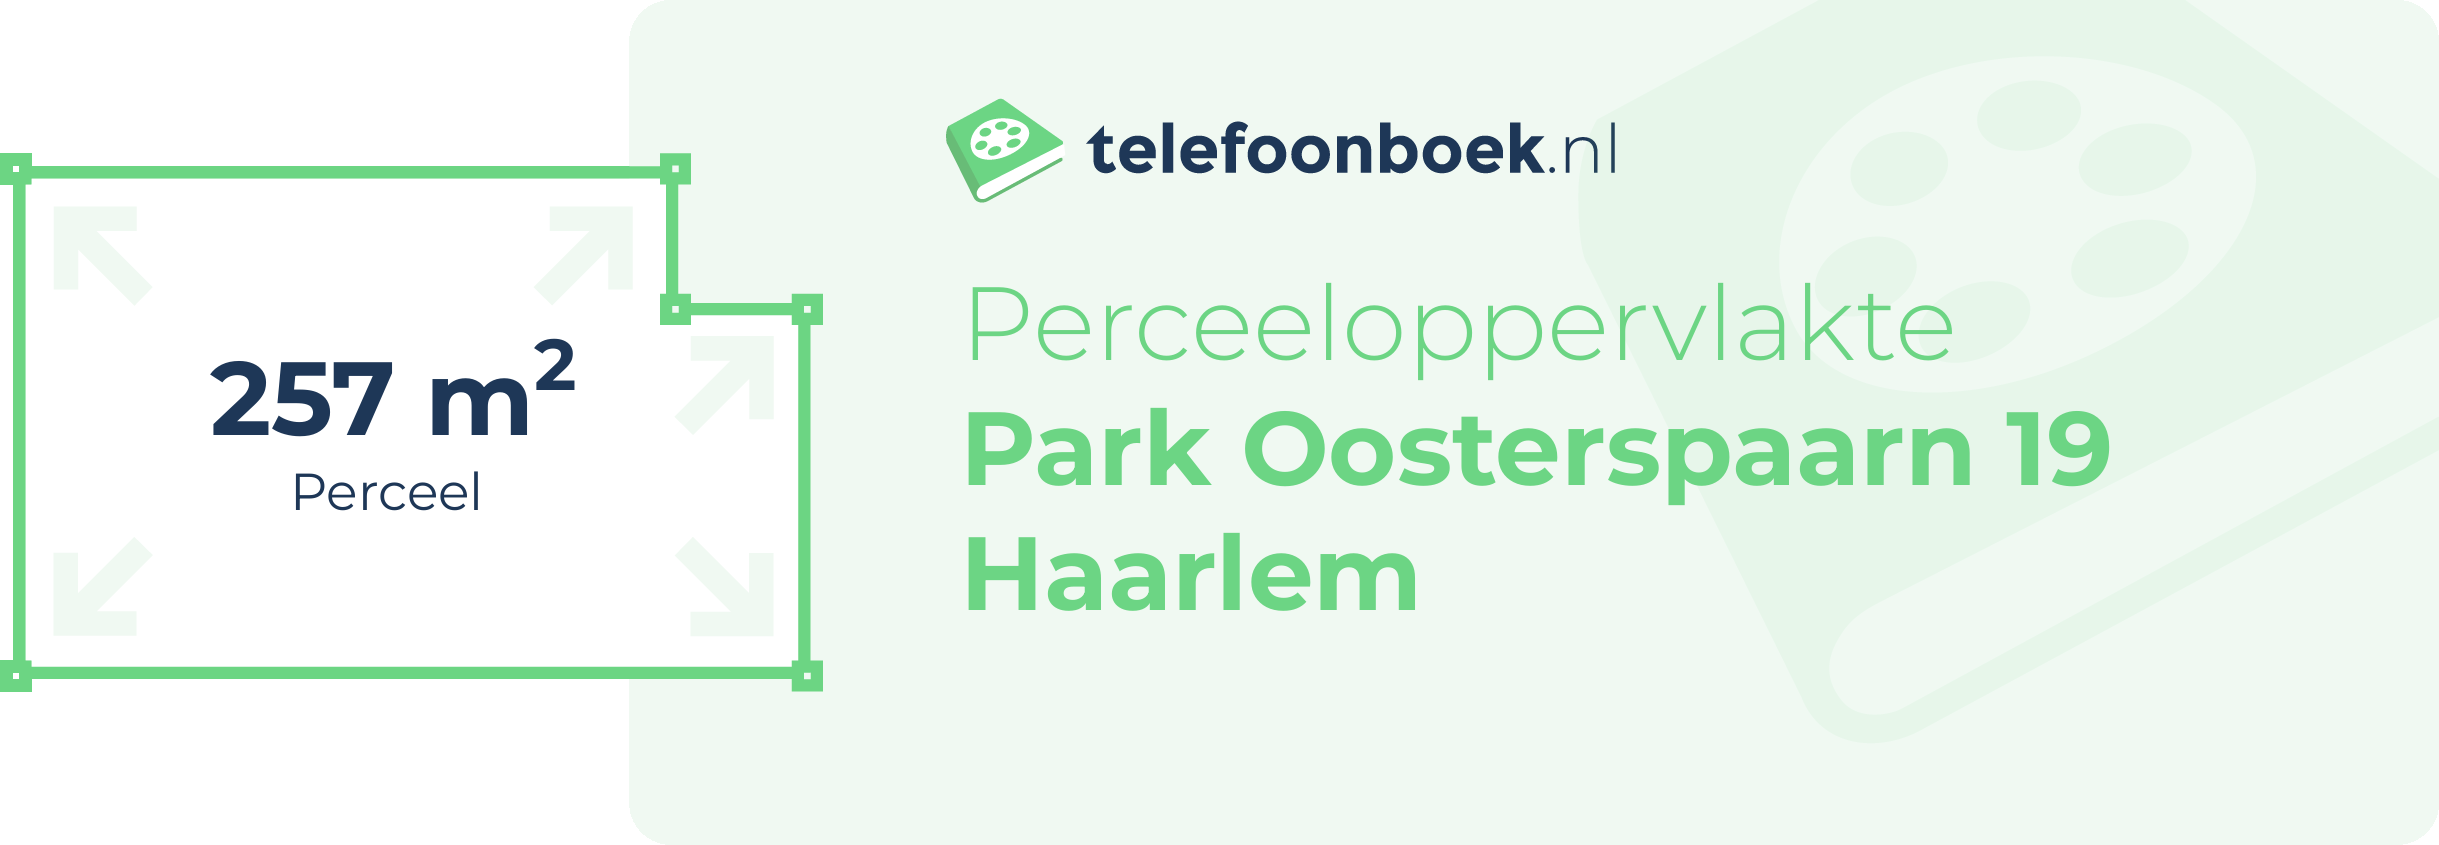 Perceeloppervlakte Park Oosterspaarn 19 Haarlem